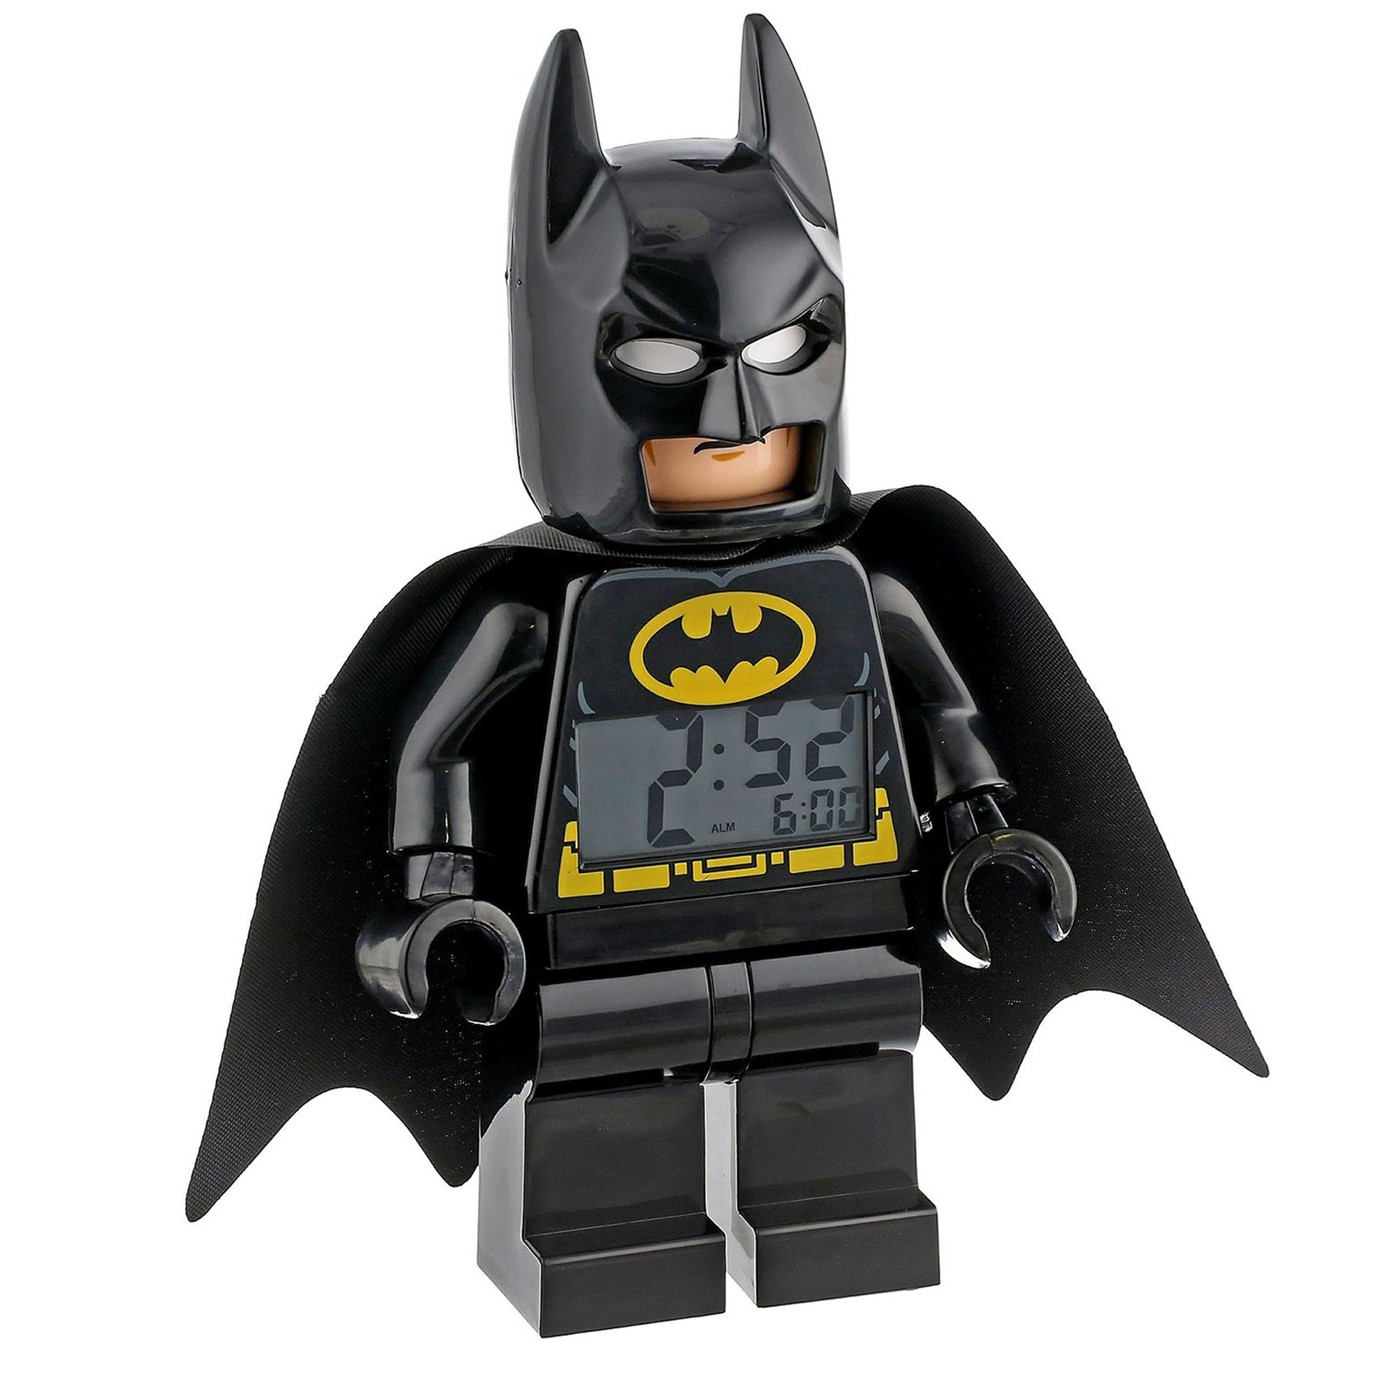 Batman LEGO Alarm Clock